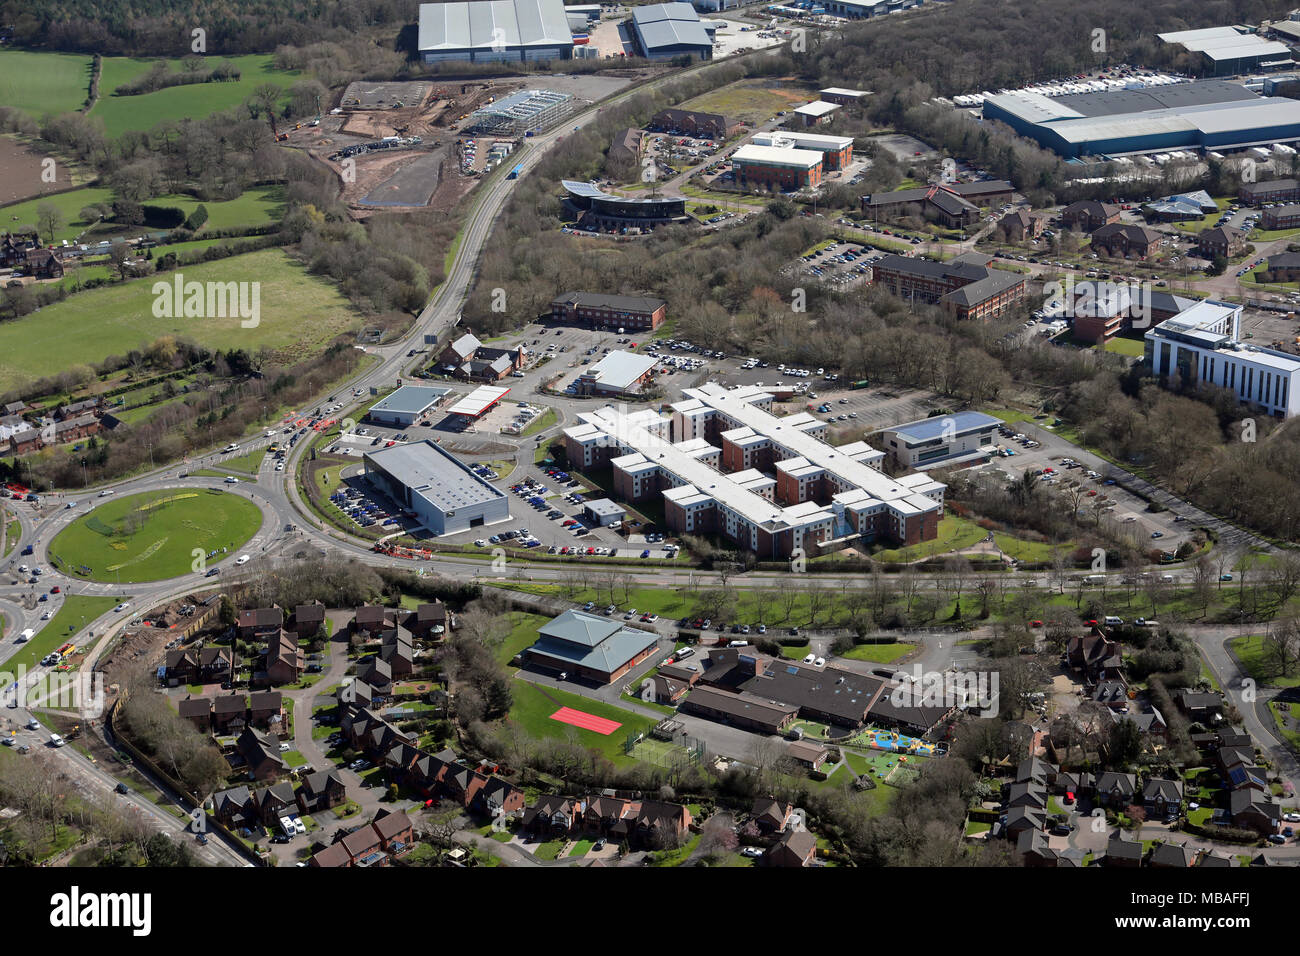 aerial view of MMU Cheshire Studentpad university student accommodation in Crewe, Cheshire, UK Stock Photo